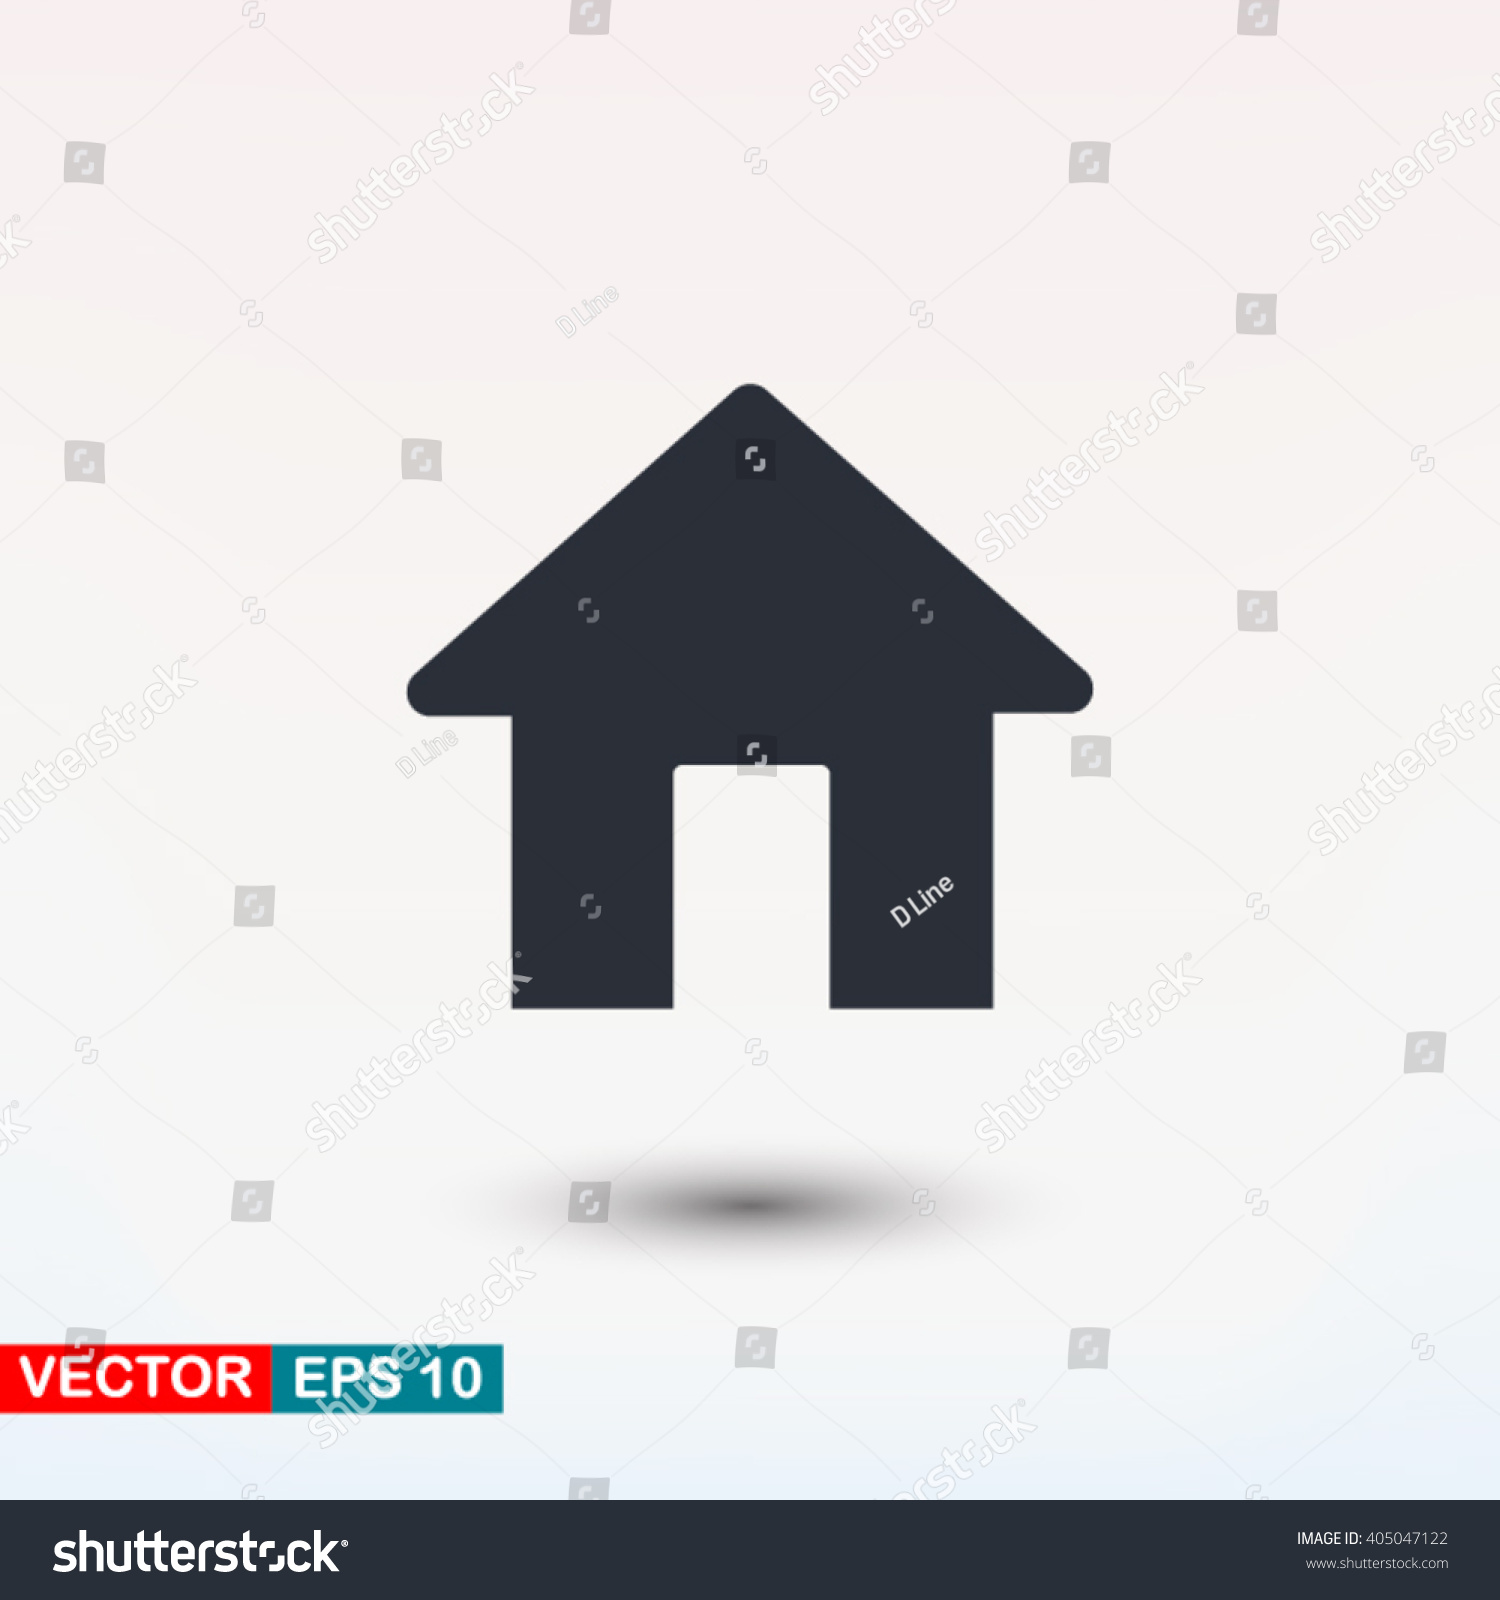 House vector icon #405047122